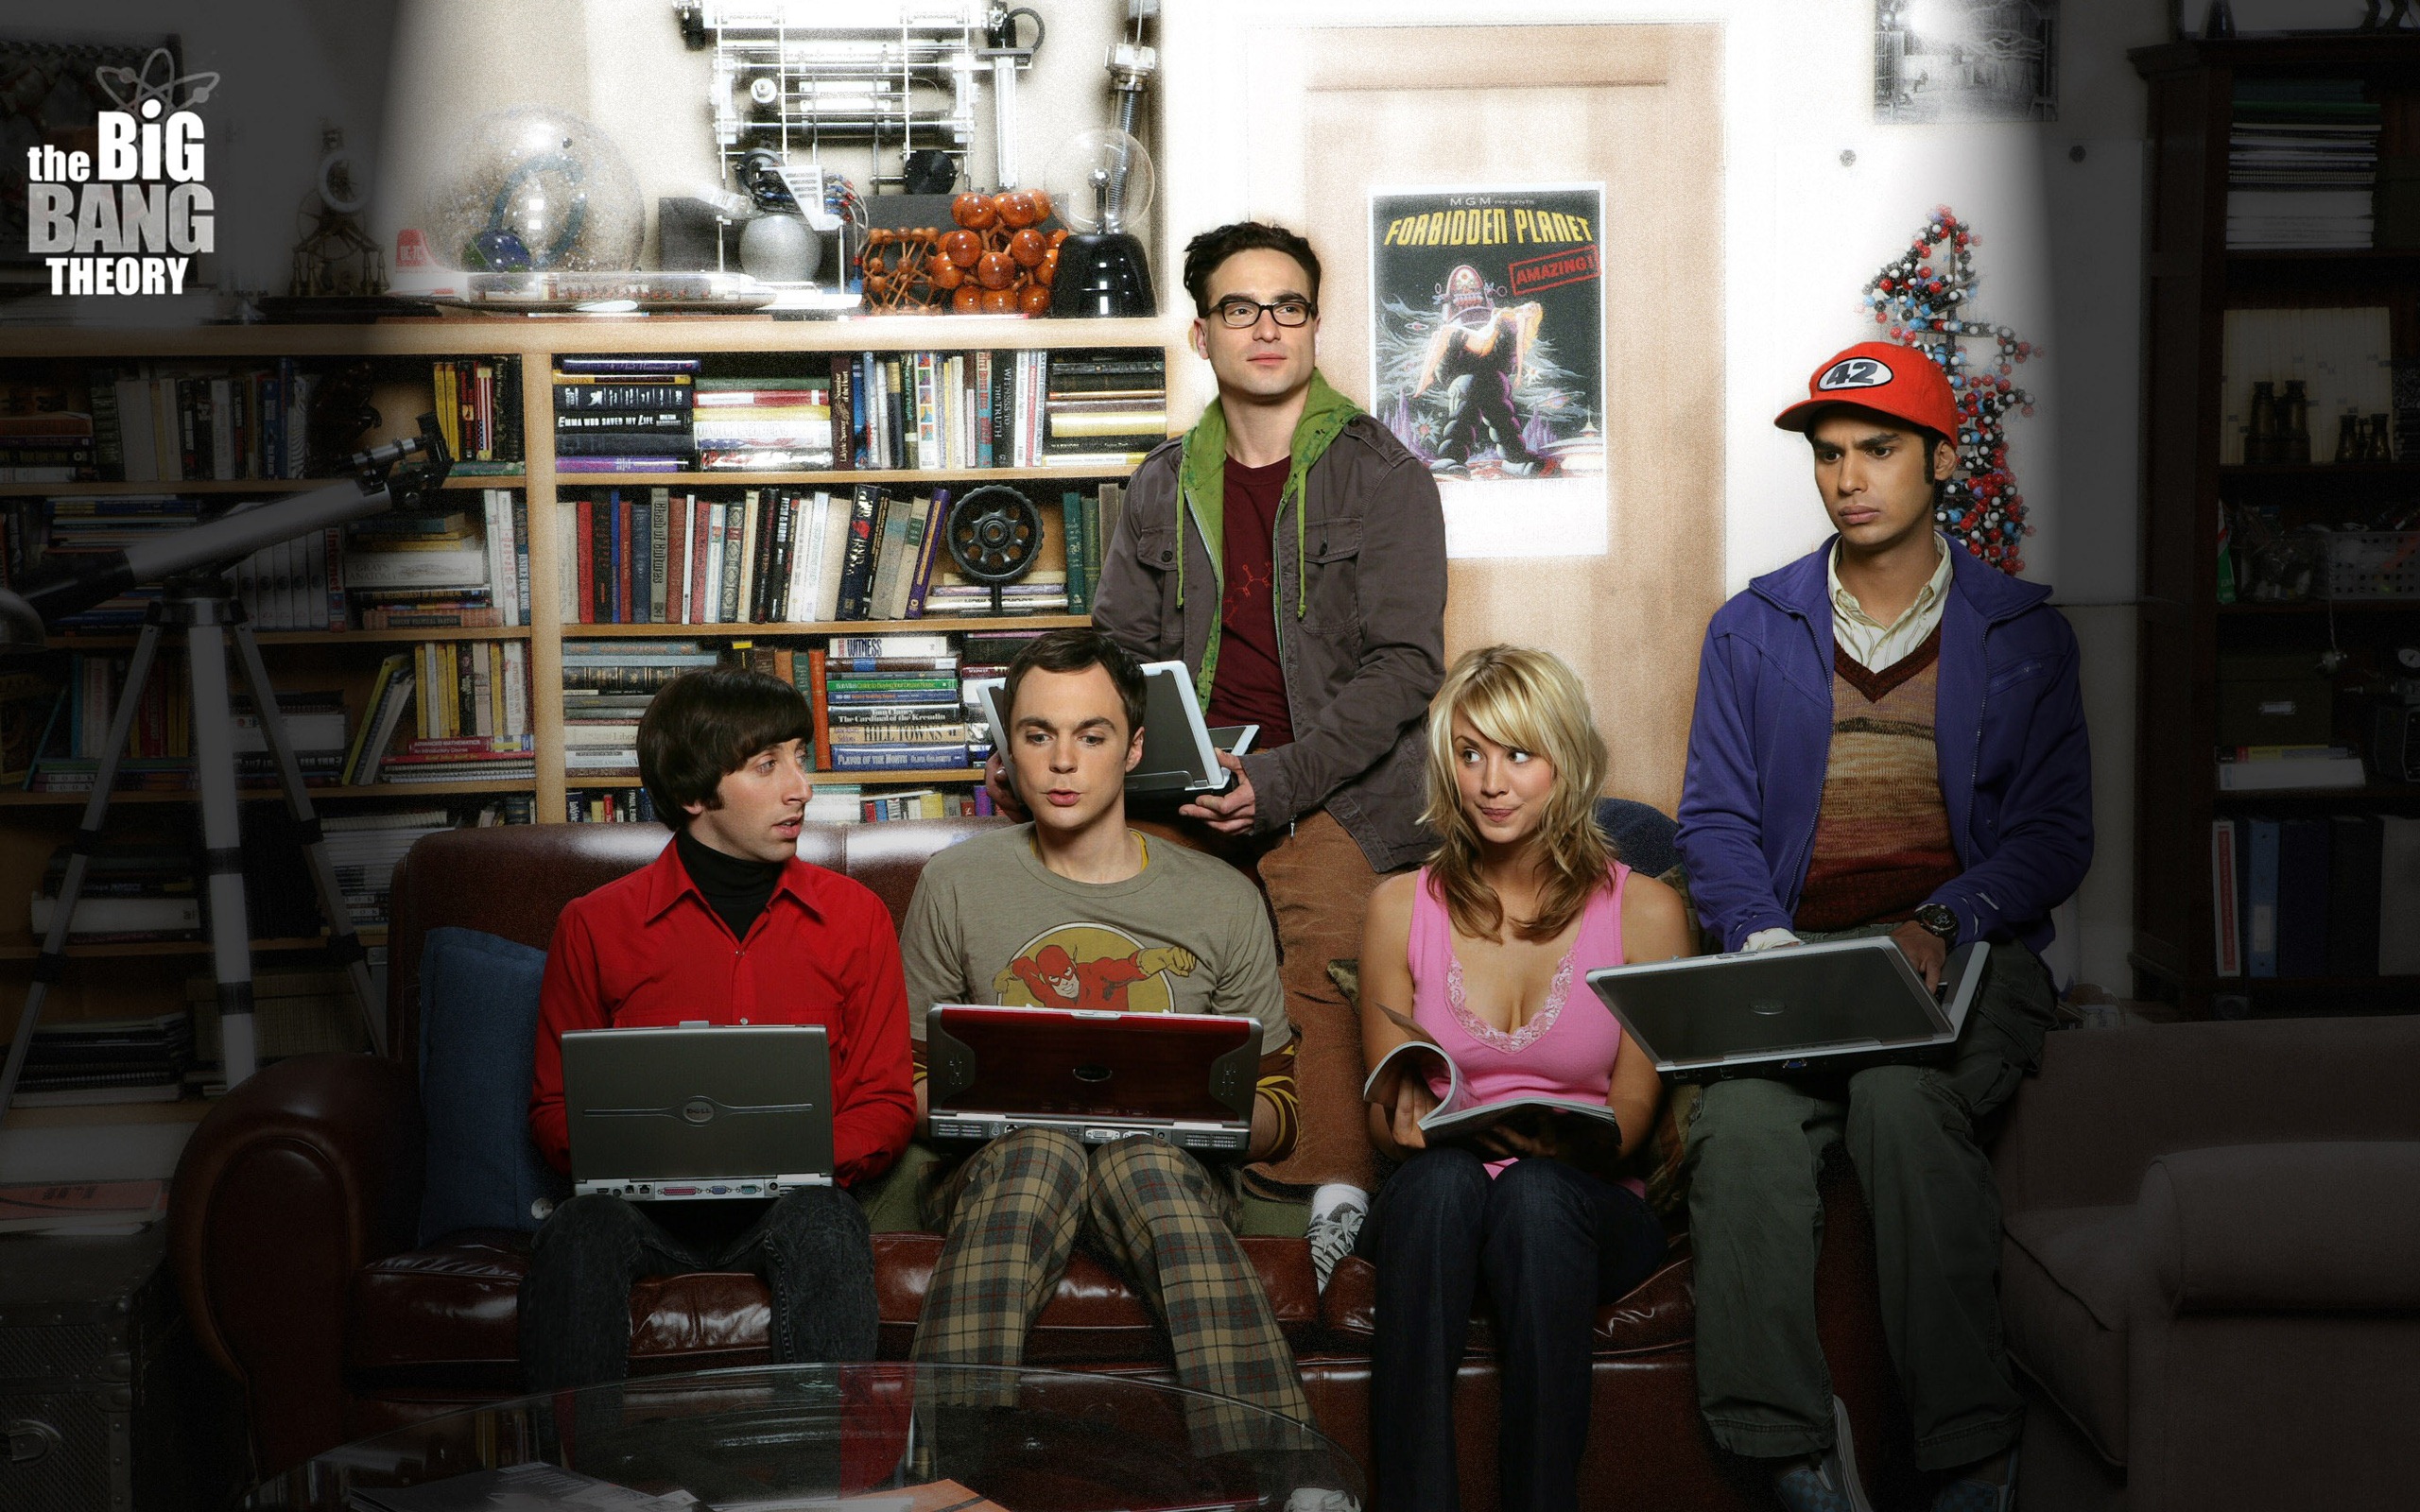 The Big Bang Theory 生活大爆炸 电视剧高清壁纸19 - 2560x1600